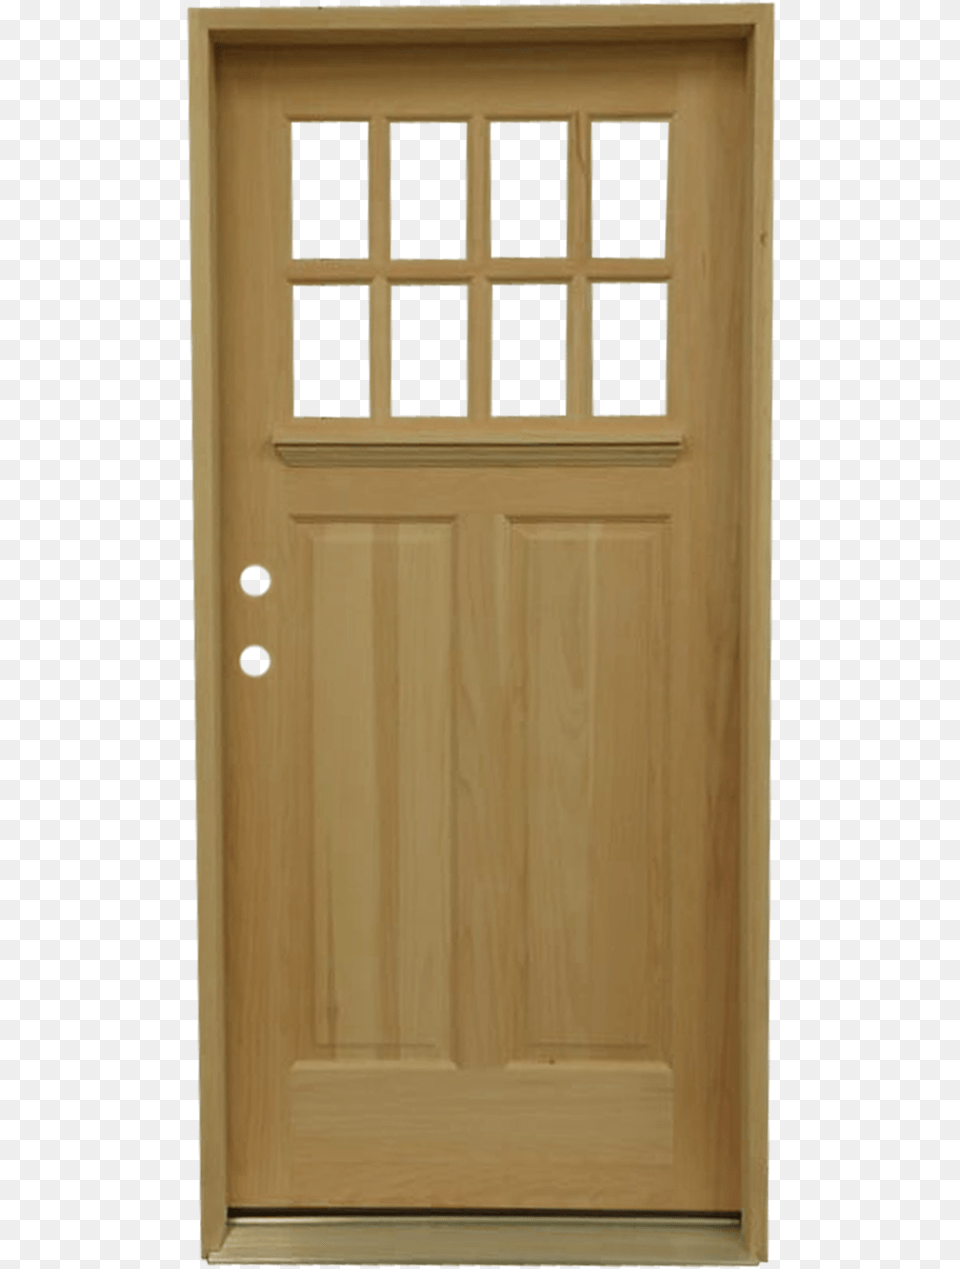 Home Door, Wood, Garage, Indoors, Architecture Png